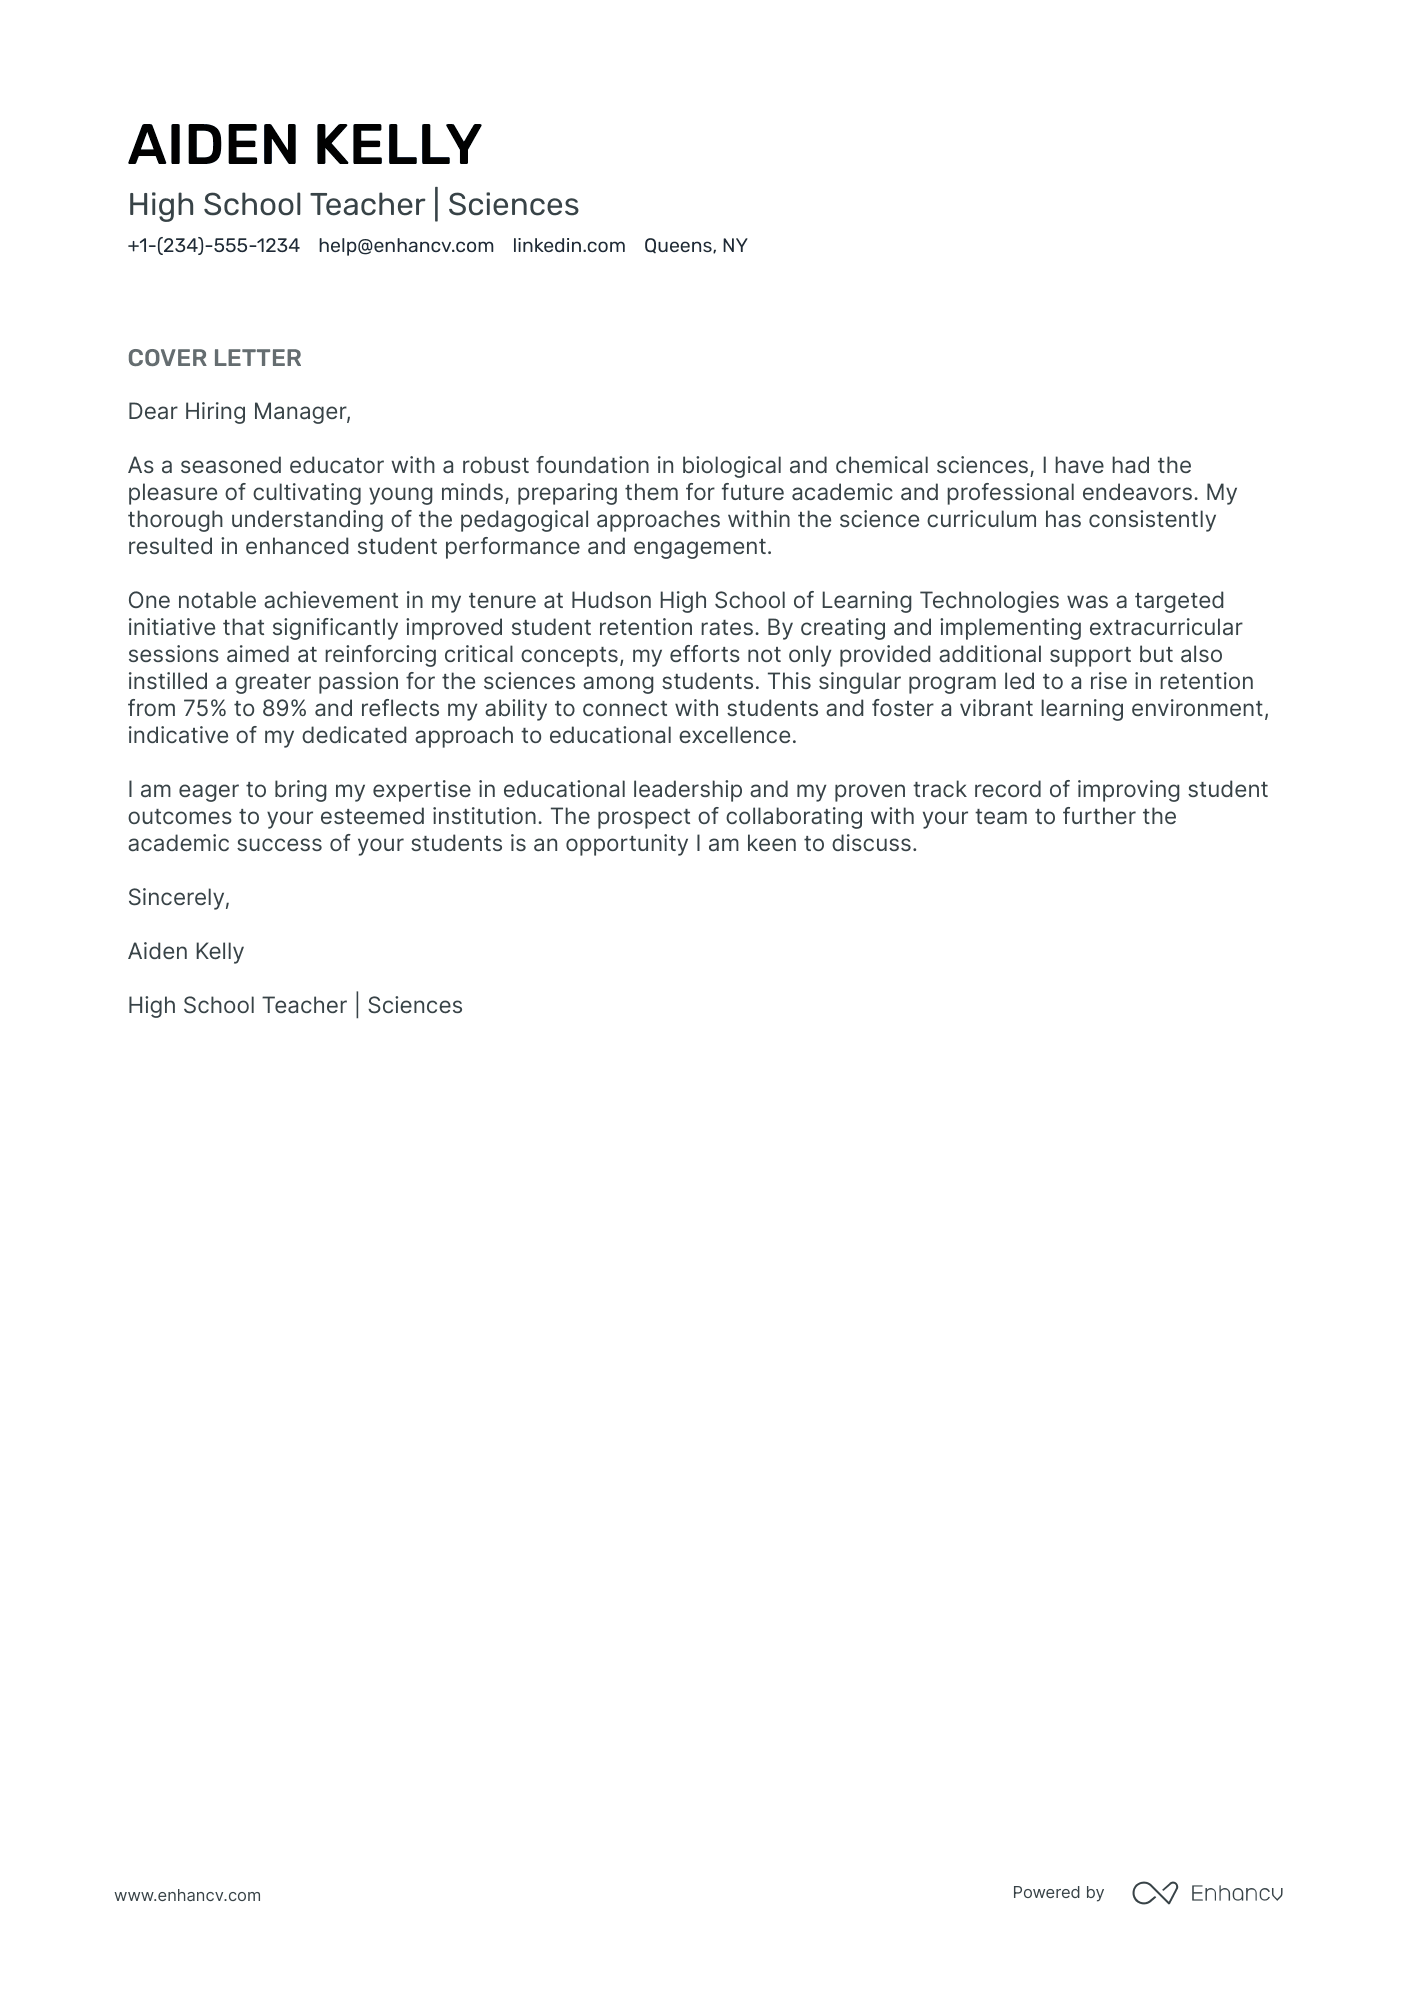 Teacher cover letter